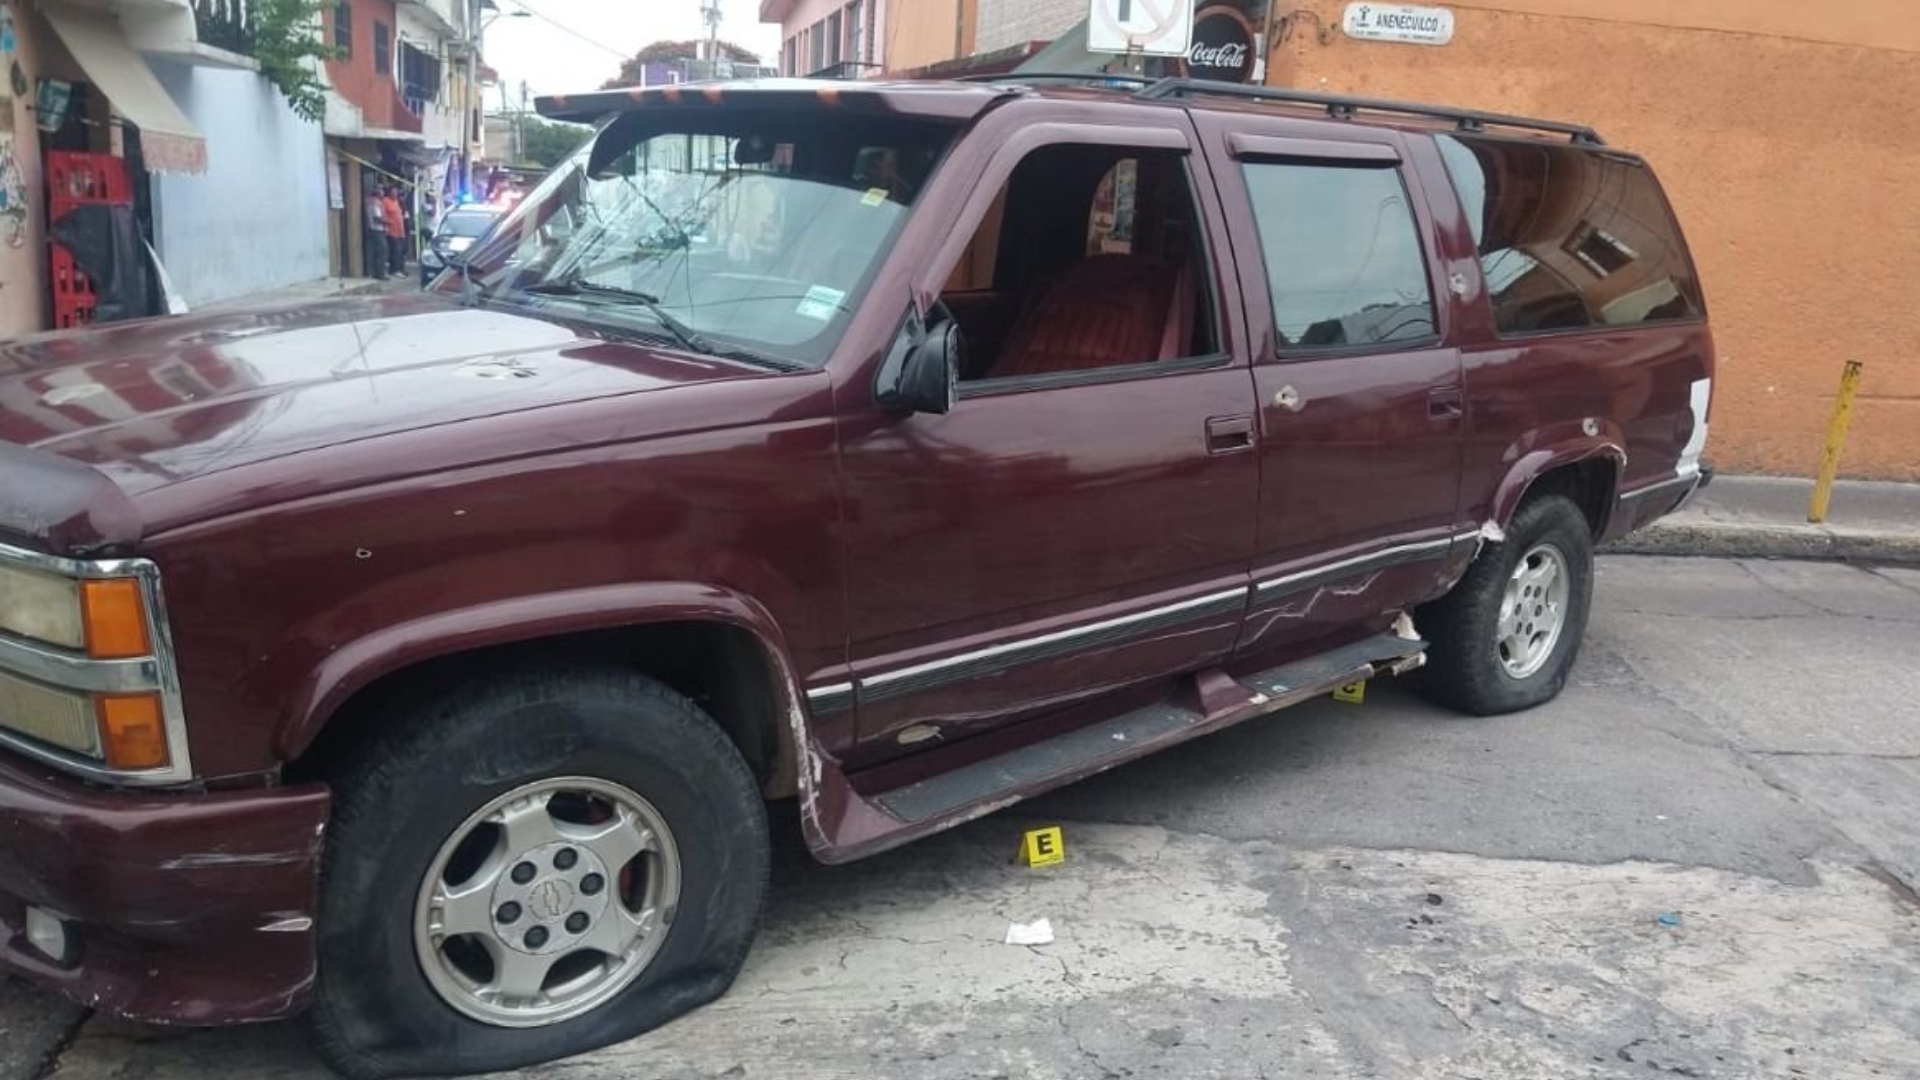 El vehículo del sujeto perseguido por supuestos agentes recibió diversos impactos de bala. (Foto: Twitter/@CorresponsalsMX)